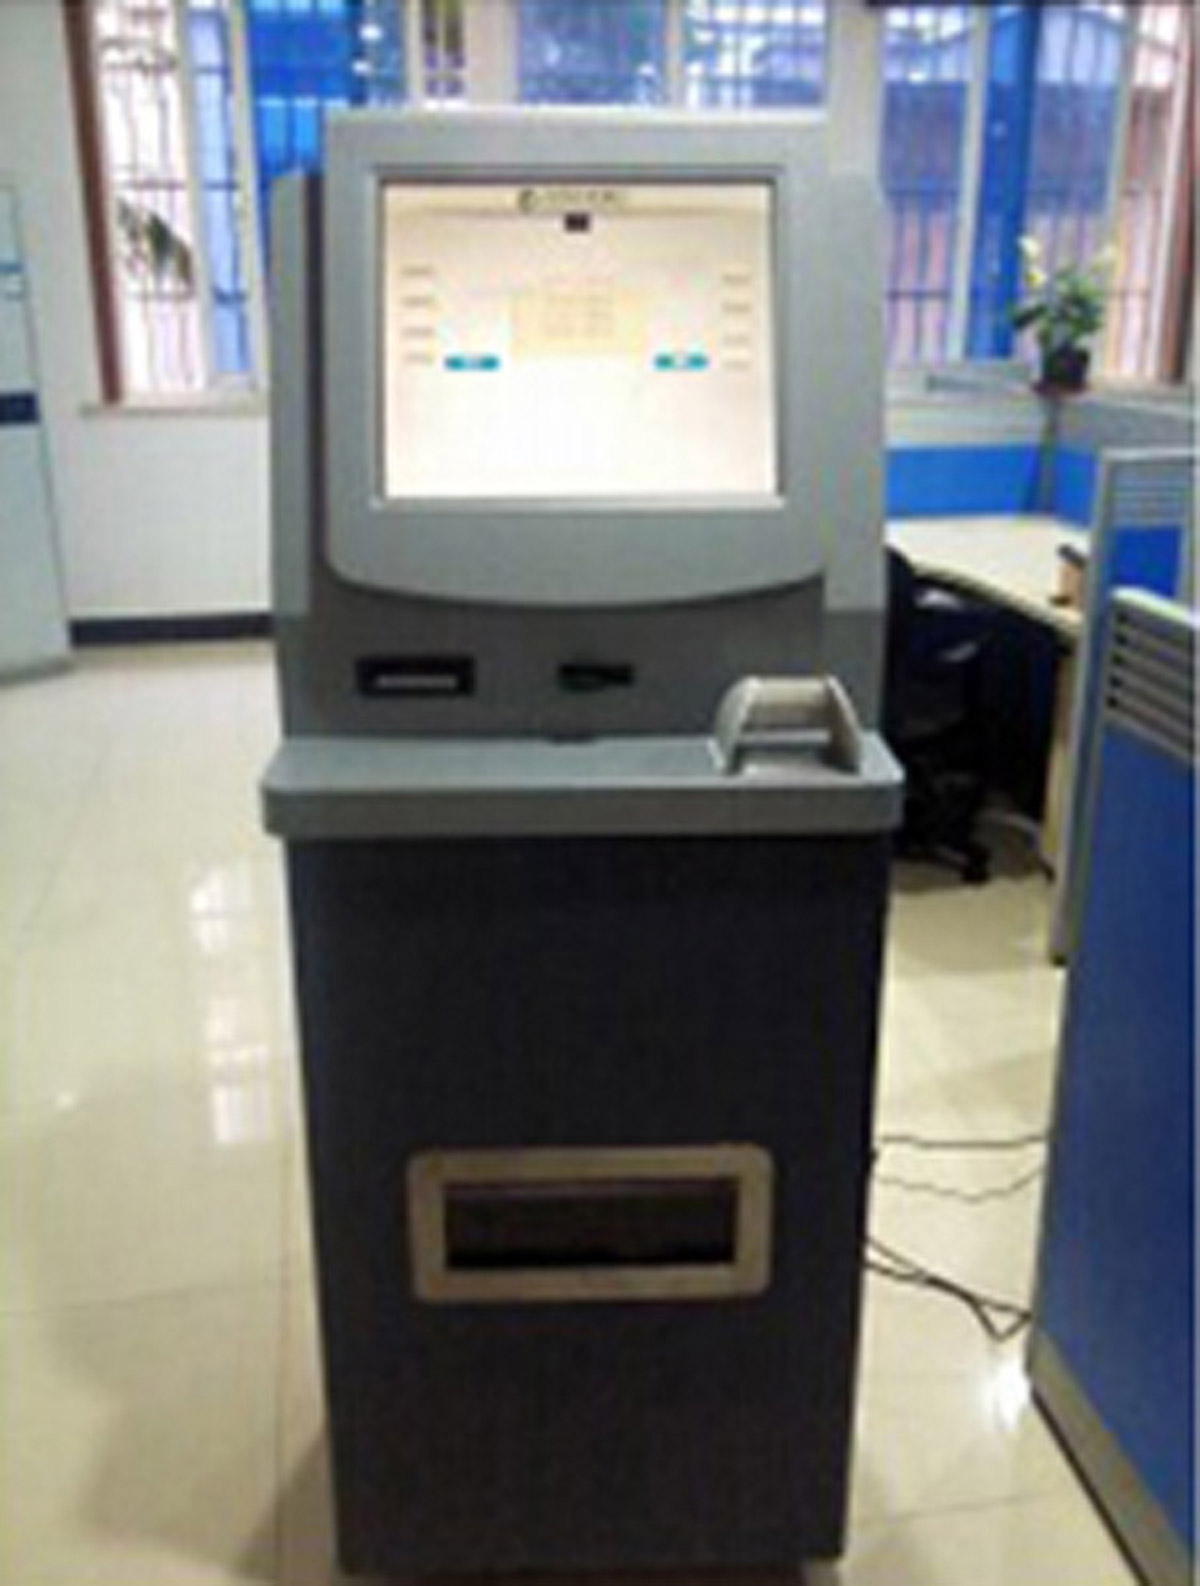 潍城球幕影院模拟ATM提款操作